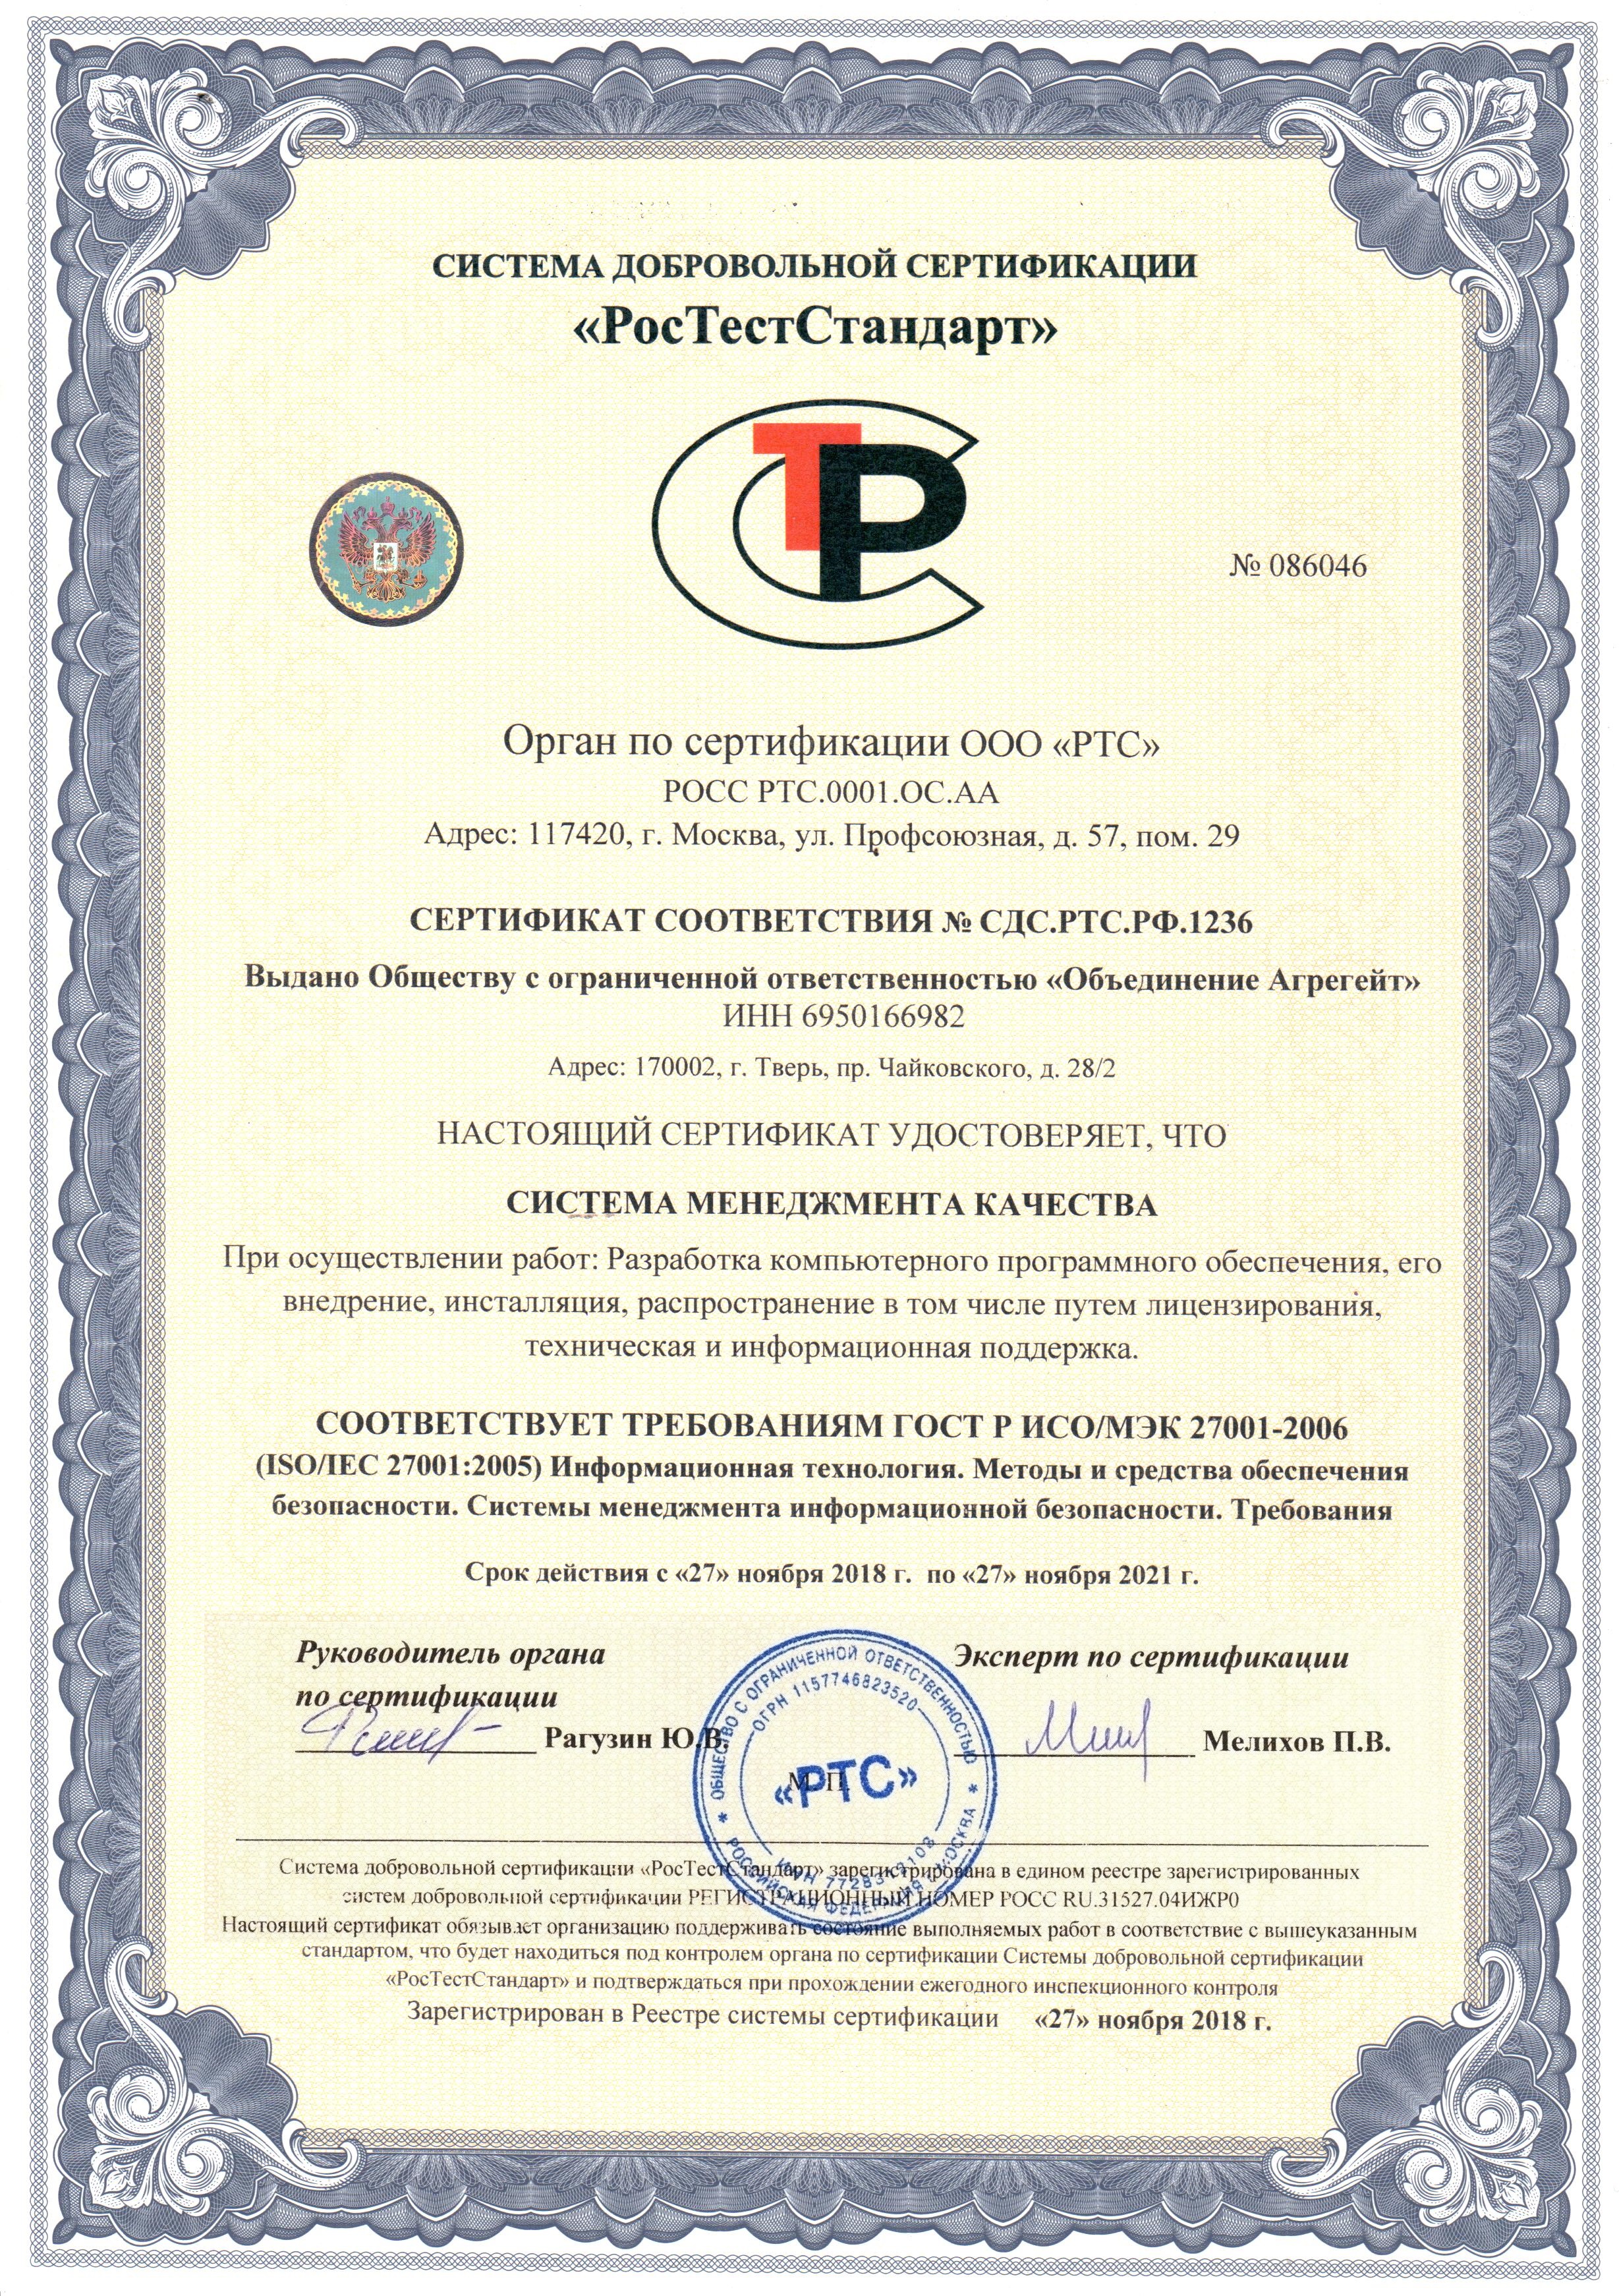 Сертификат ISO 27000 компании Tibbo Systems